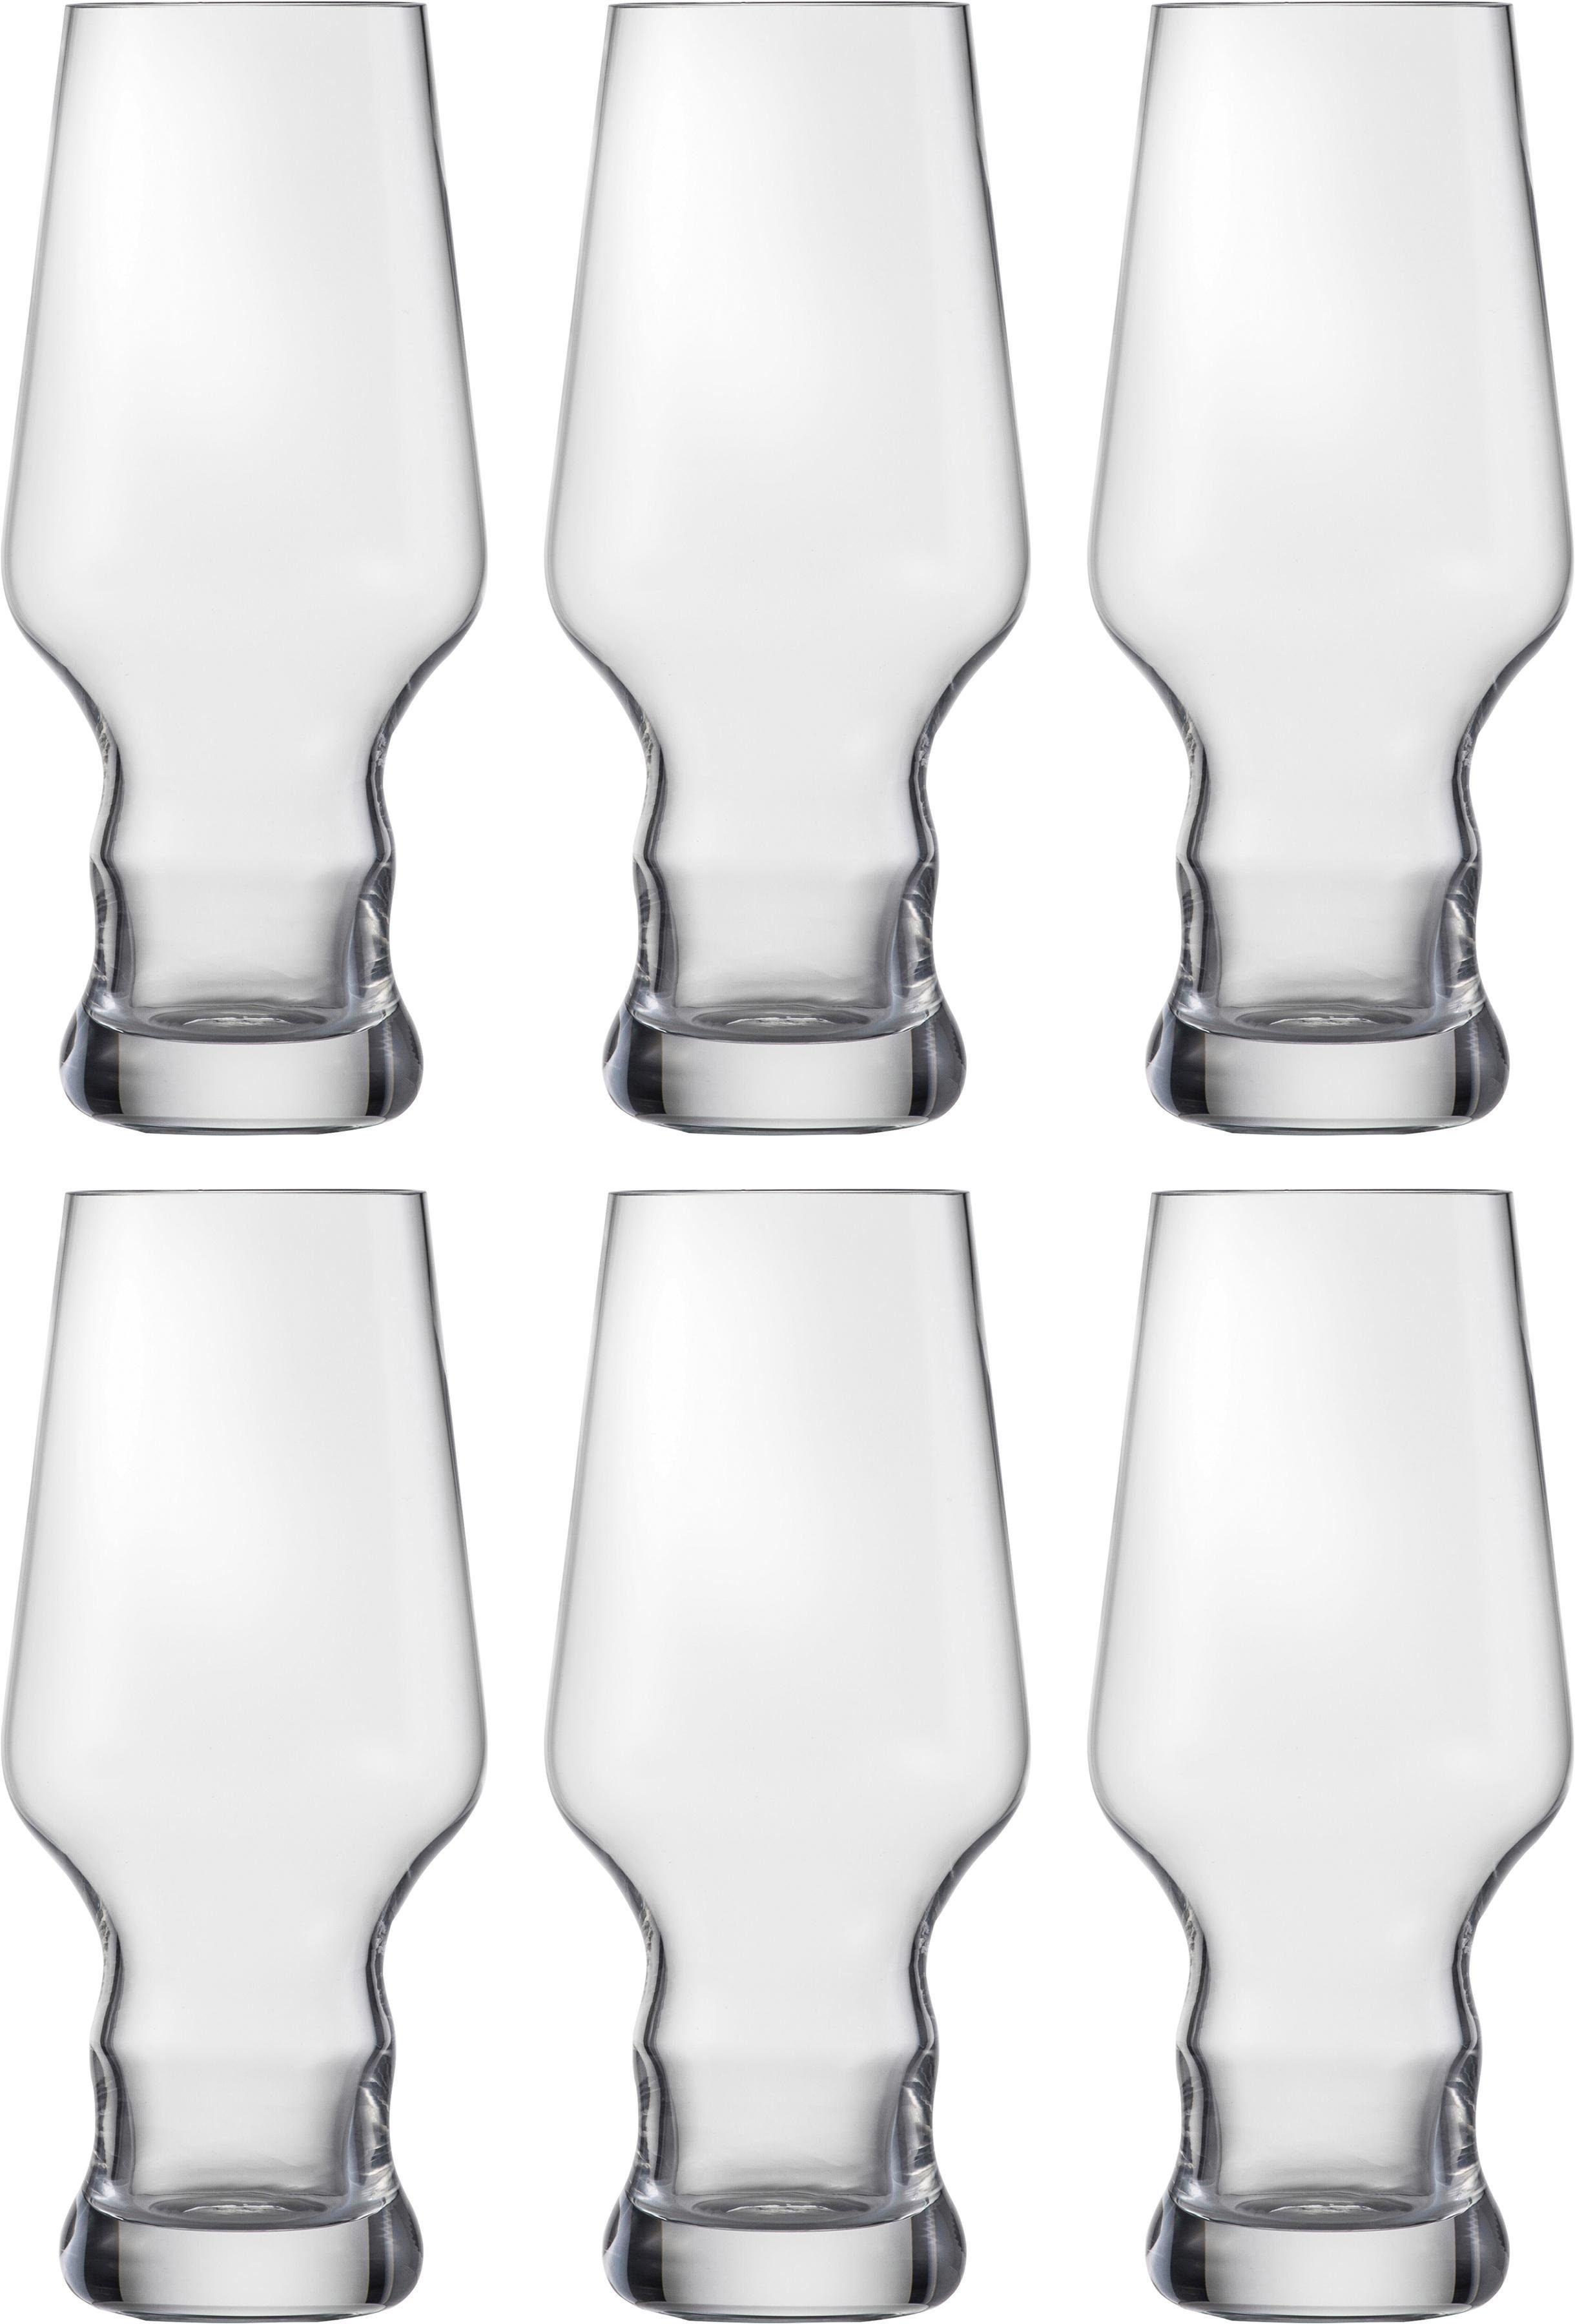 Eisch Bierglas Craft Beer Becher, Kristallglas, bleifrei, 450 ml, 6-teilig,  Formgebung zur Unterstützung der Aromenentfaltung von Craft